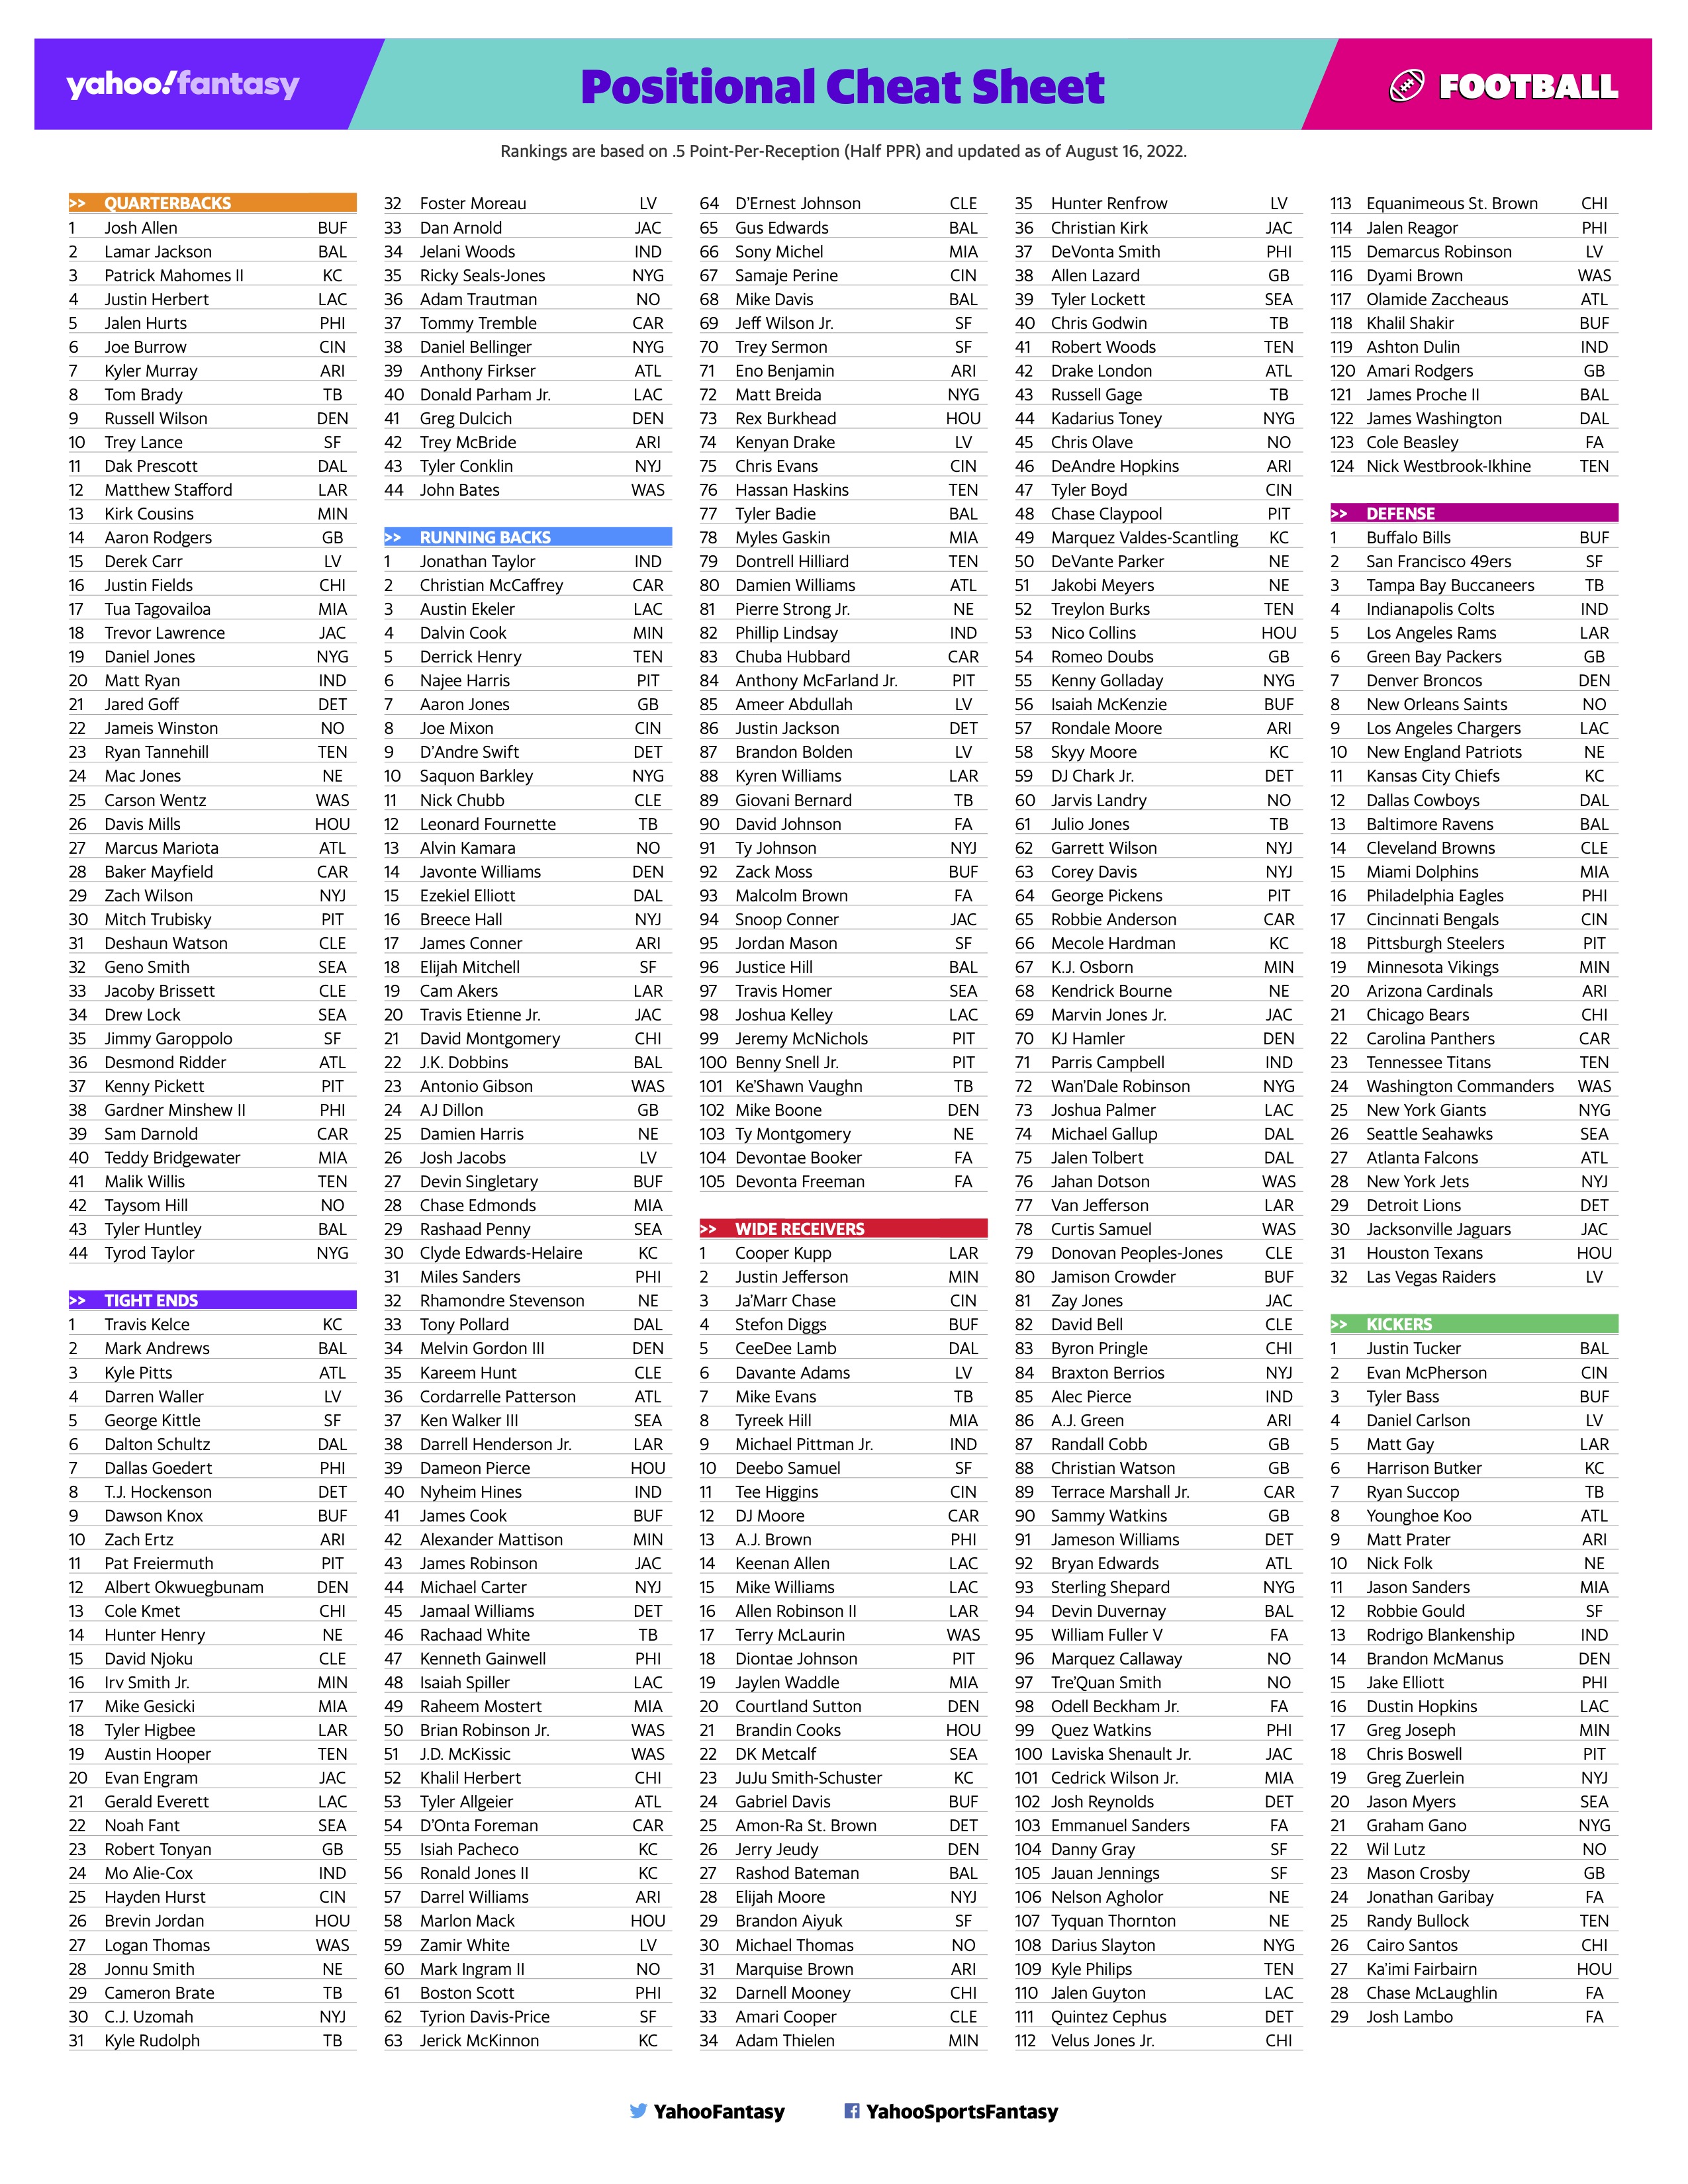 fantasy rankings sheet